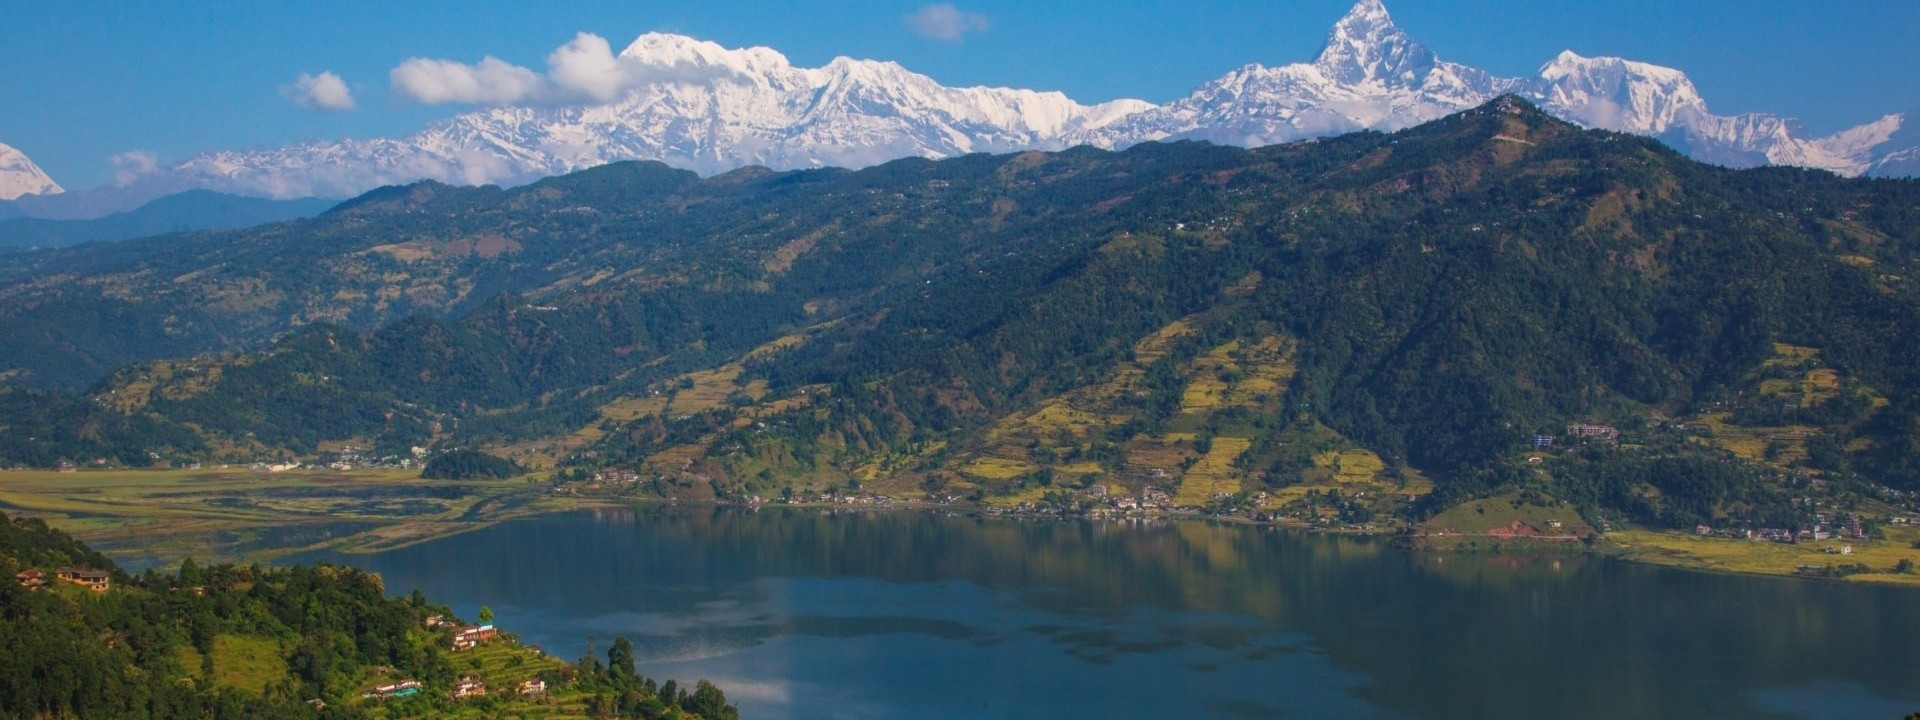 Kathmandu-Pokhara-Chitwan Tour